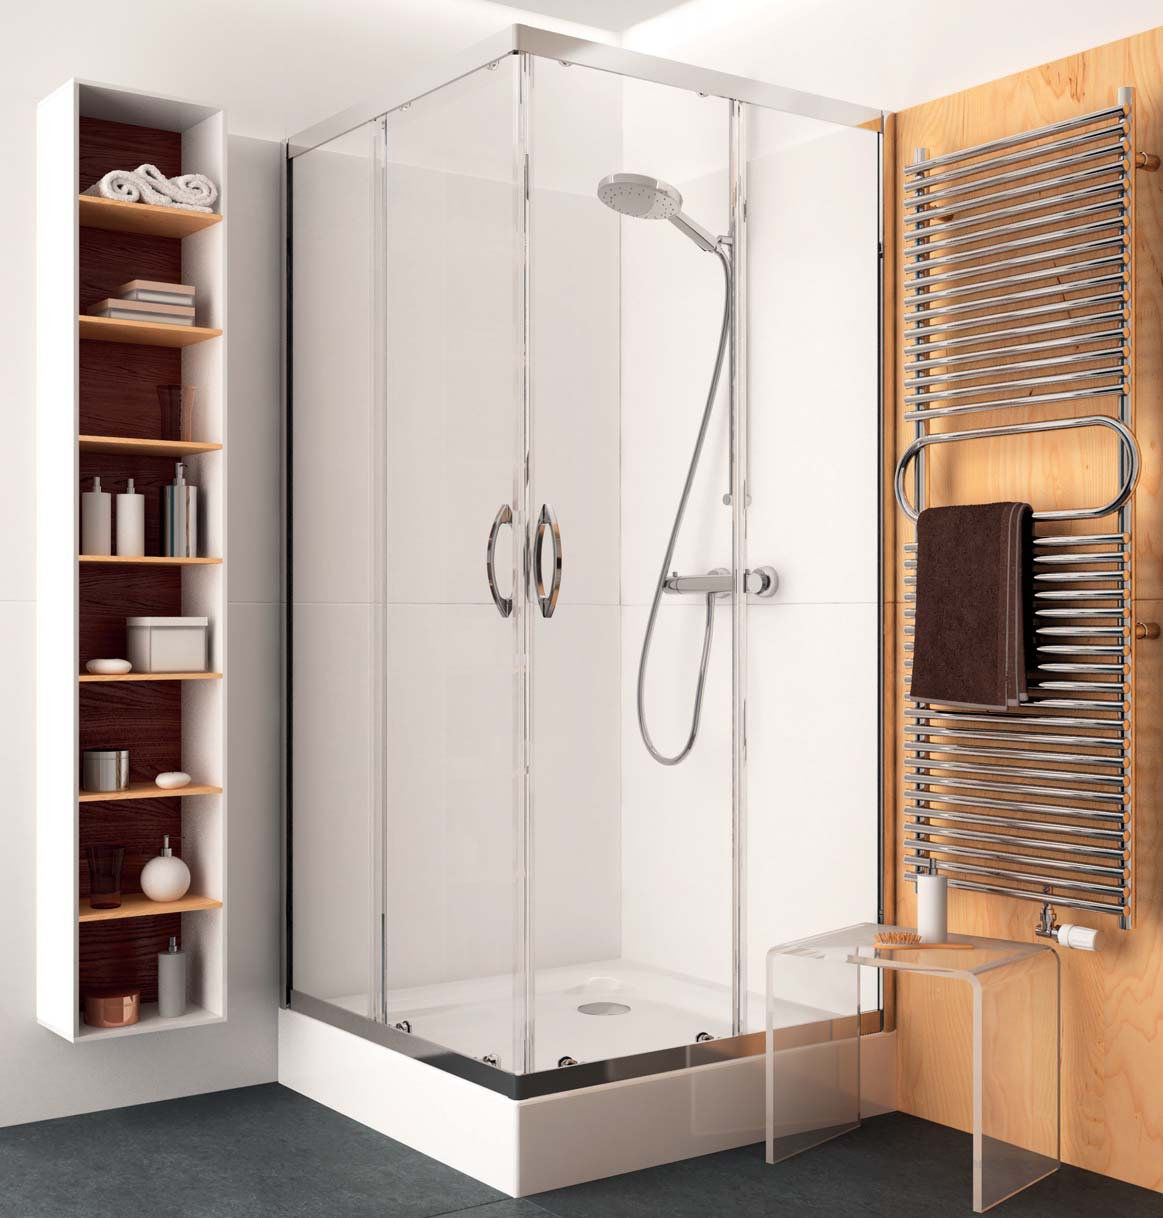 01 REKORD EKONOMICKÉ RIEŠENIA SO VŠETKÝMI VÝHODAMI Sprchovacie kúty Rekord sa vyznačujú najmä univerzálnym dizajnom, ktorý je vhodný pre každú kúpeľňu a je za atraktívnu cenu.